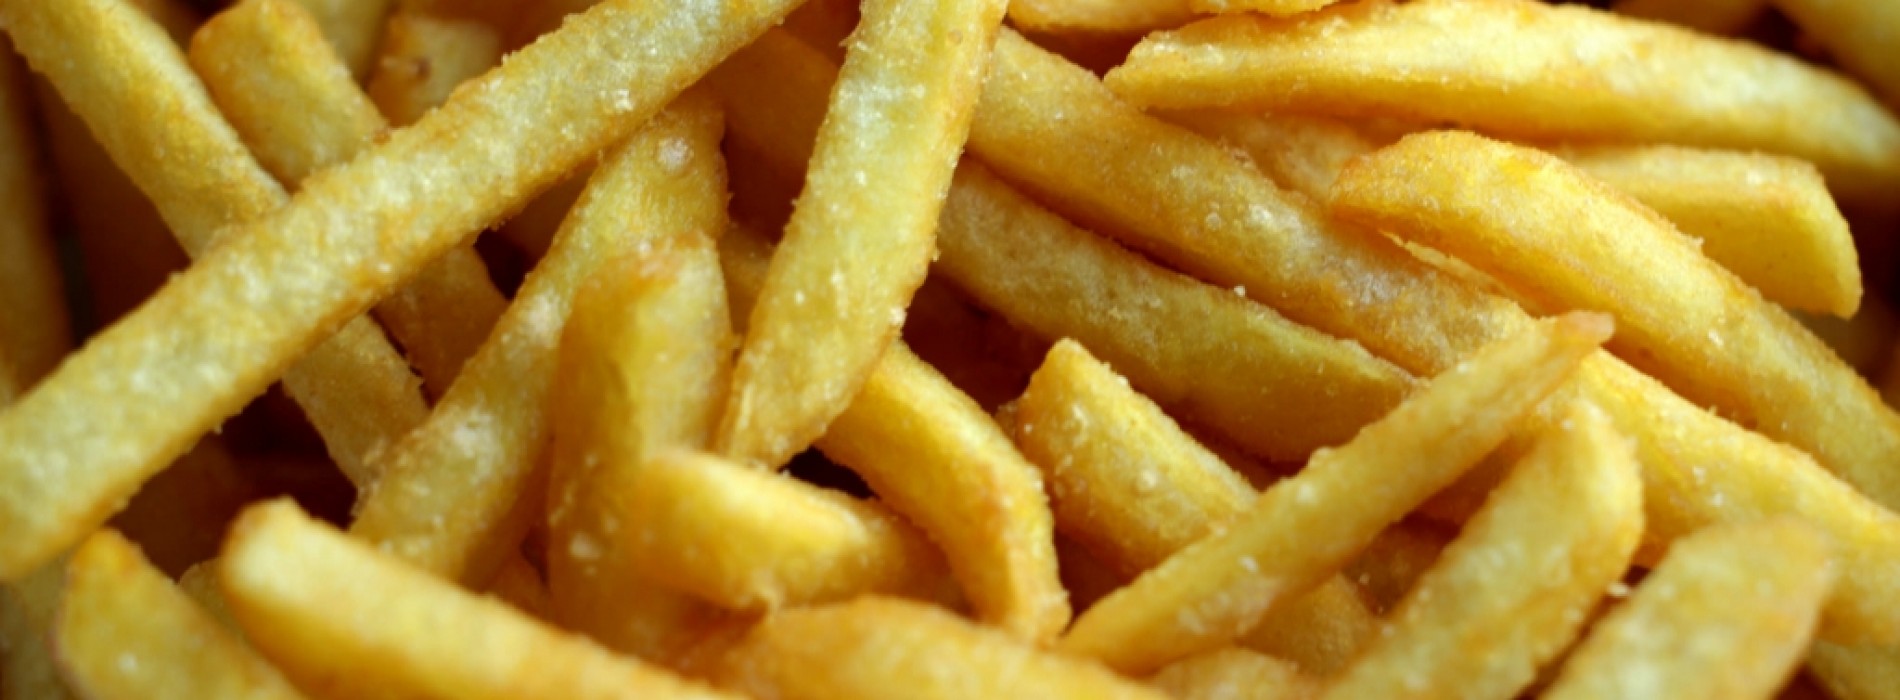 Nieuws van de dag! Volgens onderzoek heeft patat eten toch een aantal voordelen!